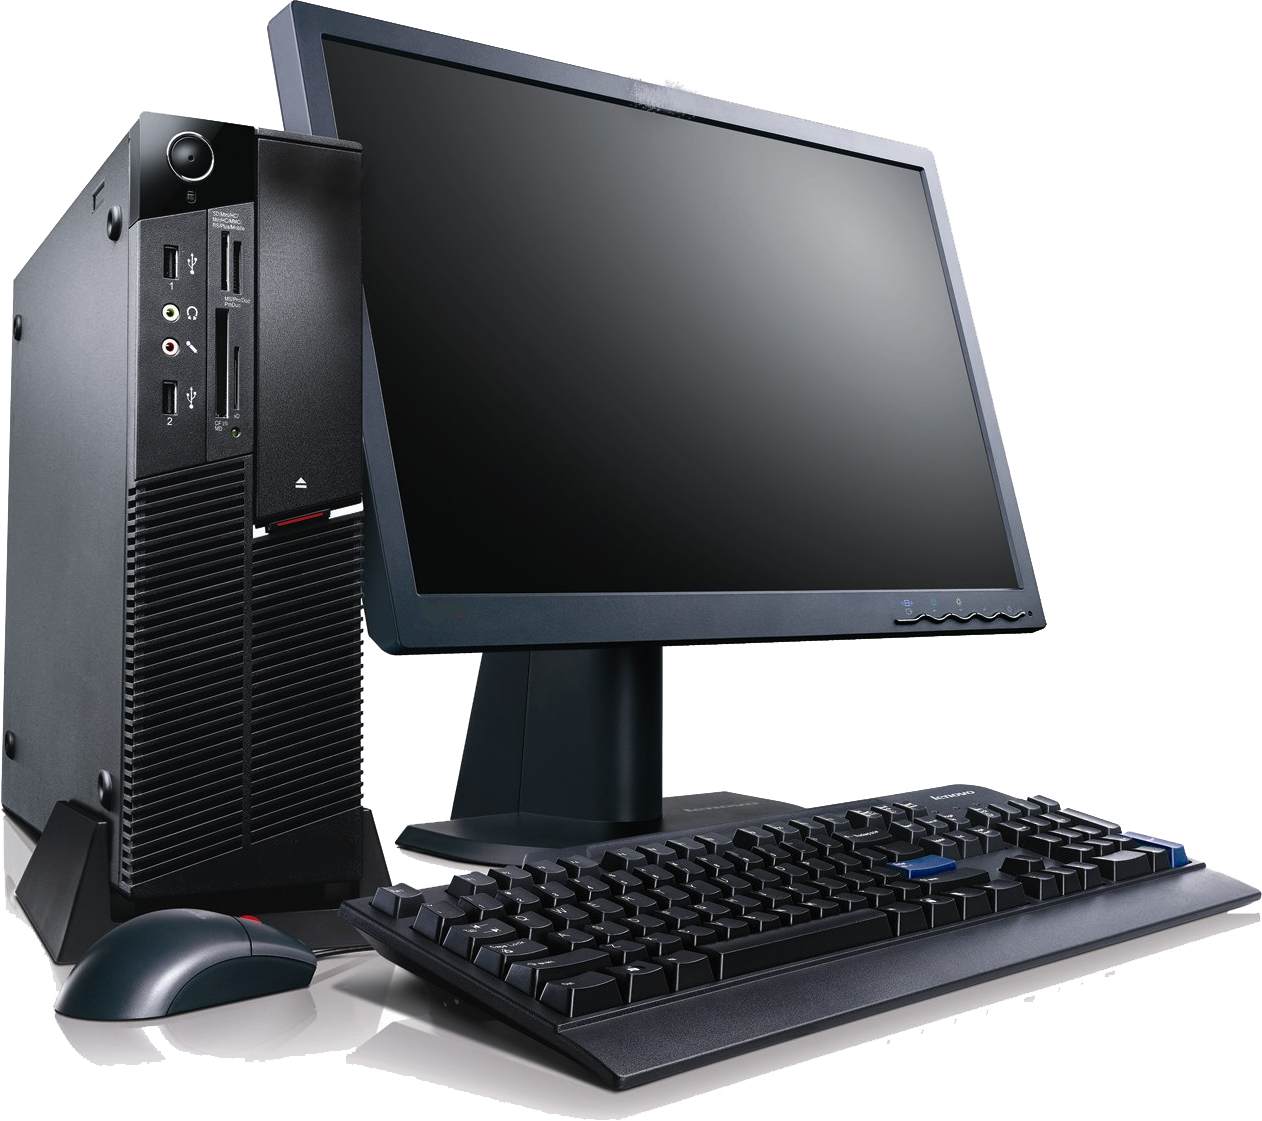 Lenovo Desktop Computer PNG Image